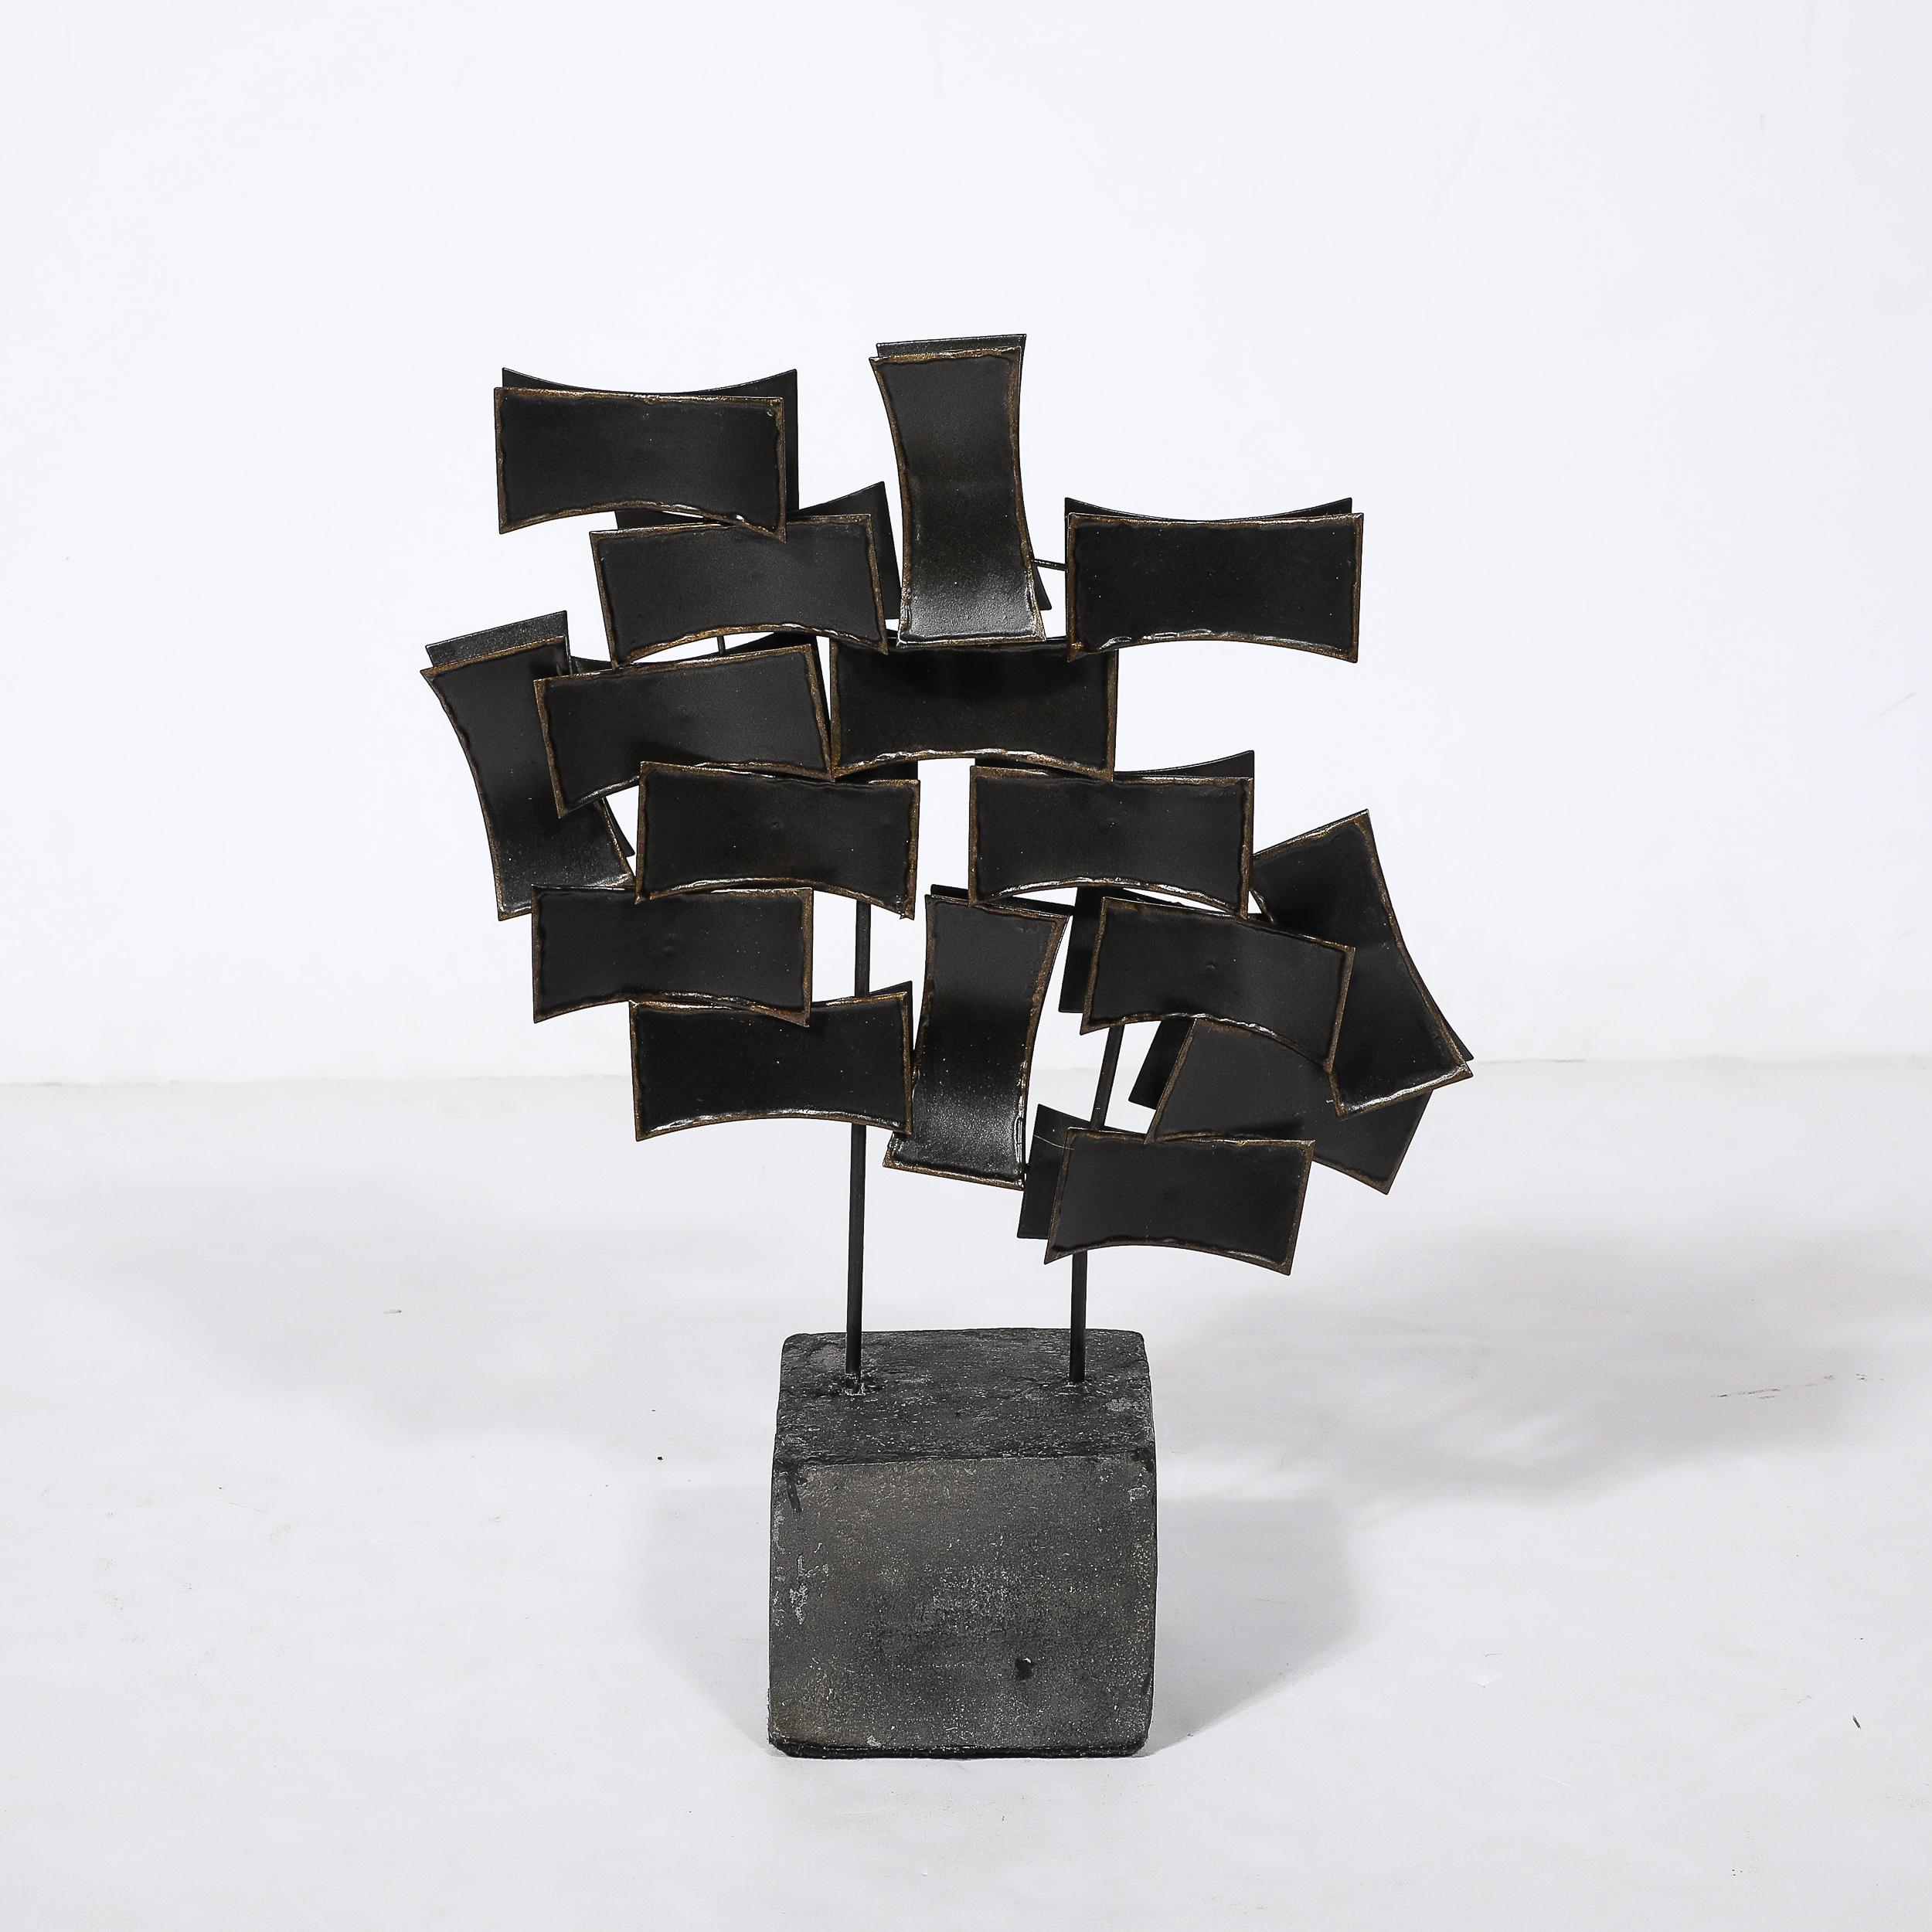 Fin du 20e siècle Sculpture abstraite brutaliste du milieu du siècle en bronze taillé, à la manière de Curtis Jeré